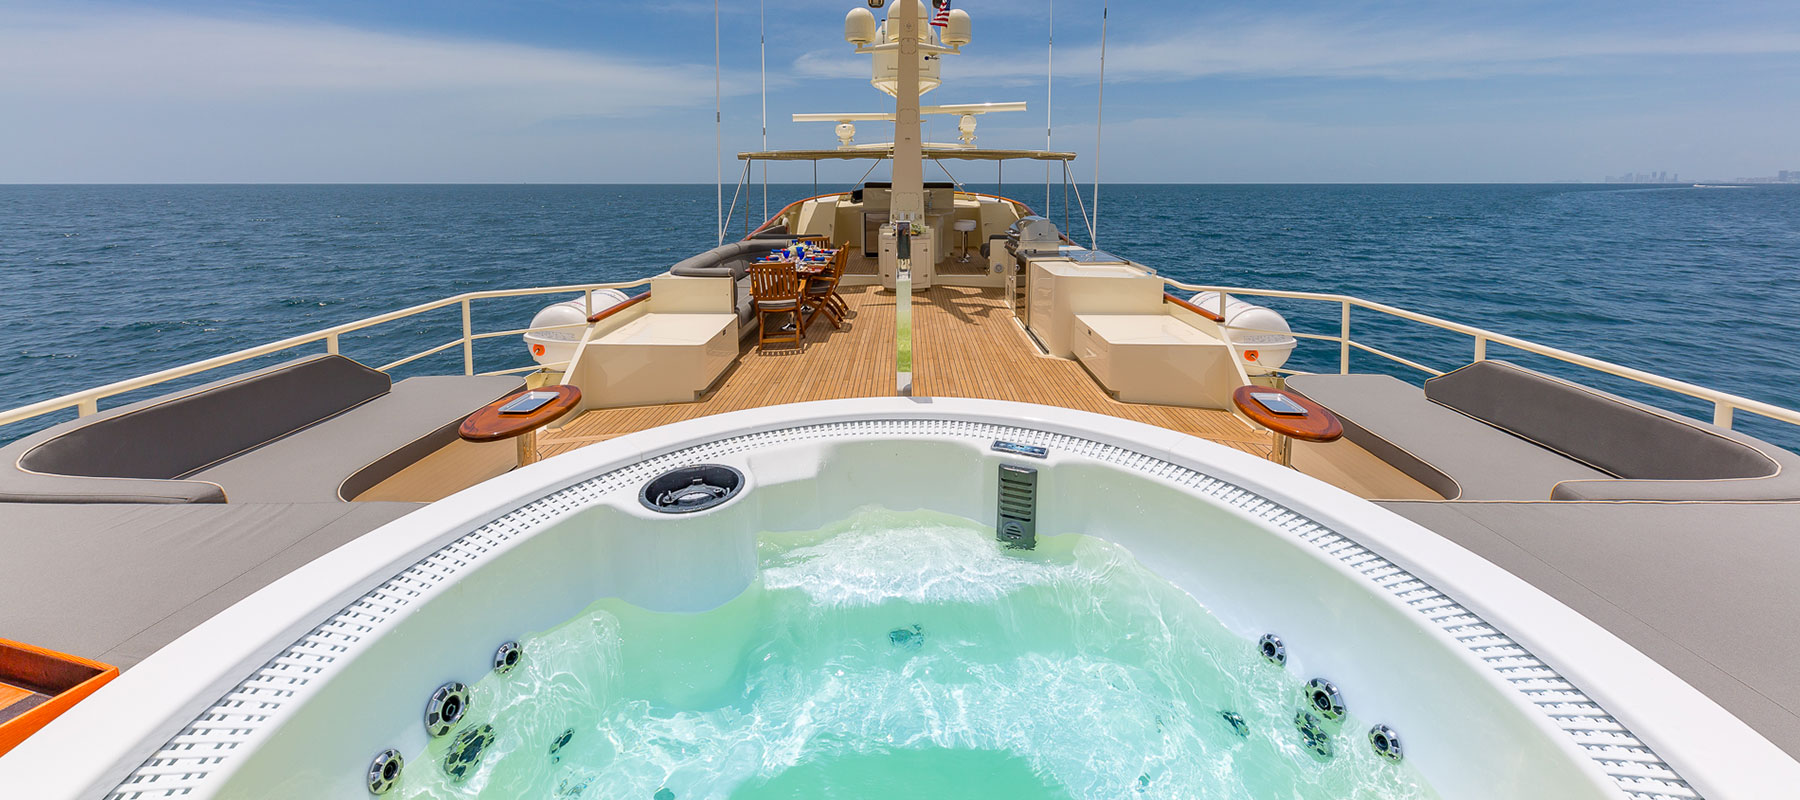 Ariadne Yacht Hot Tub Deck